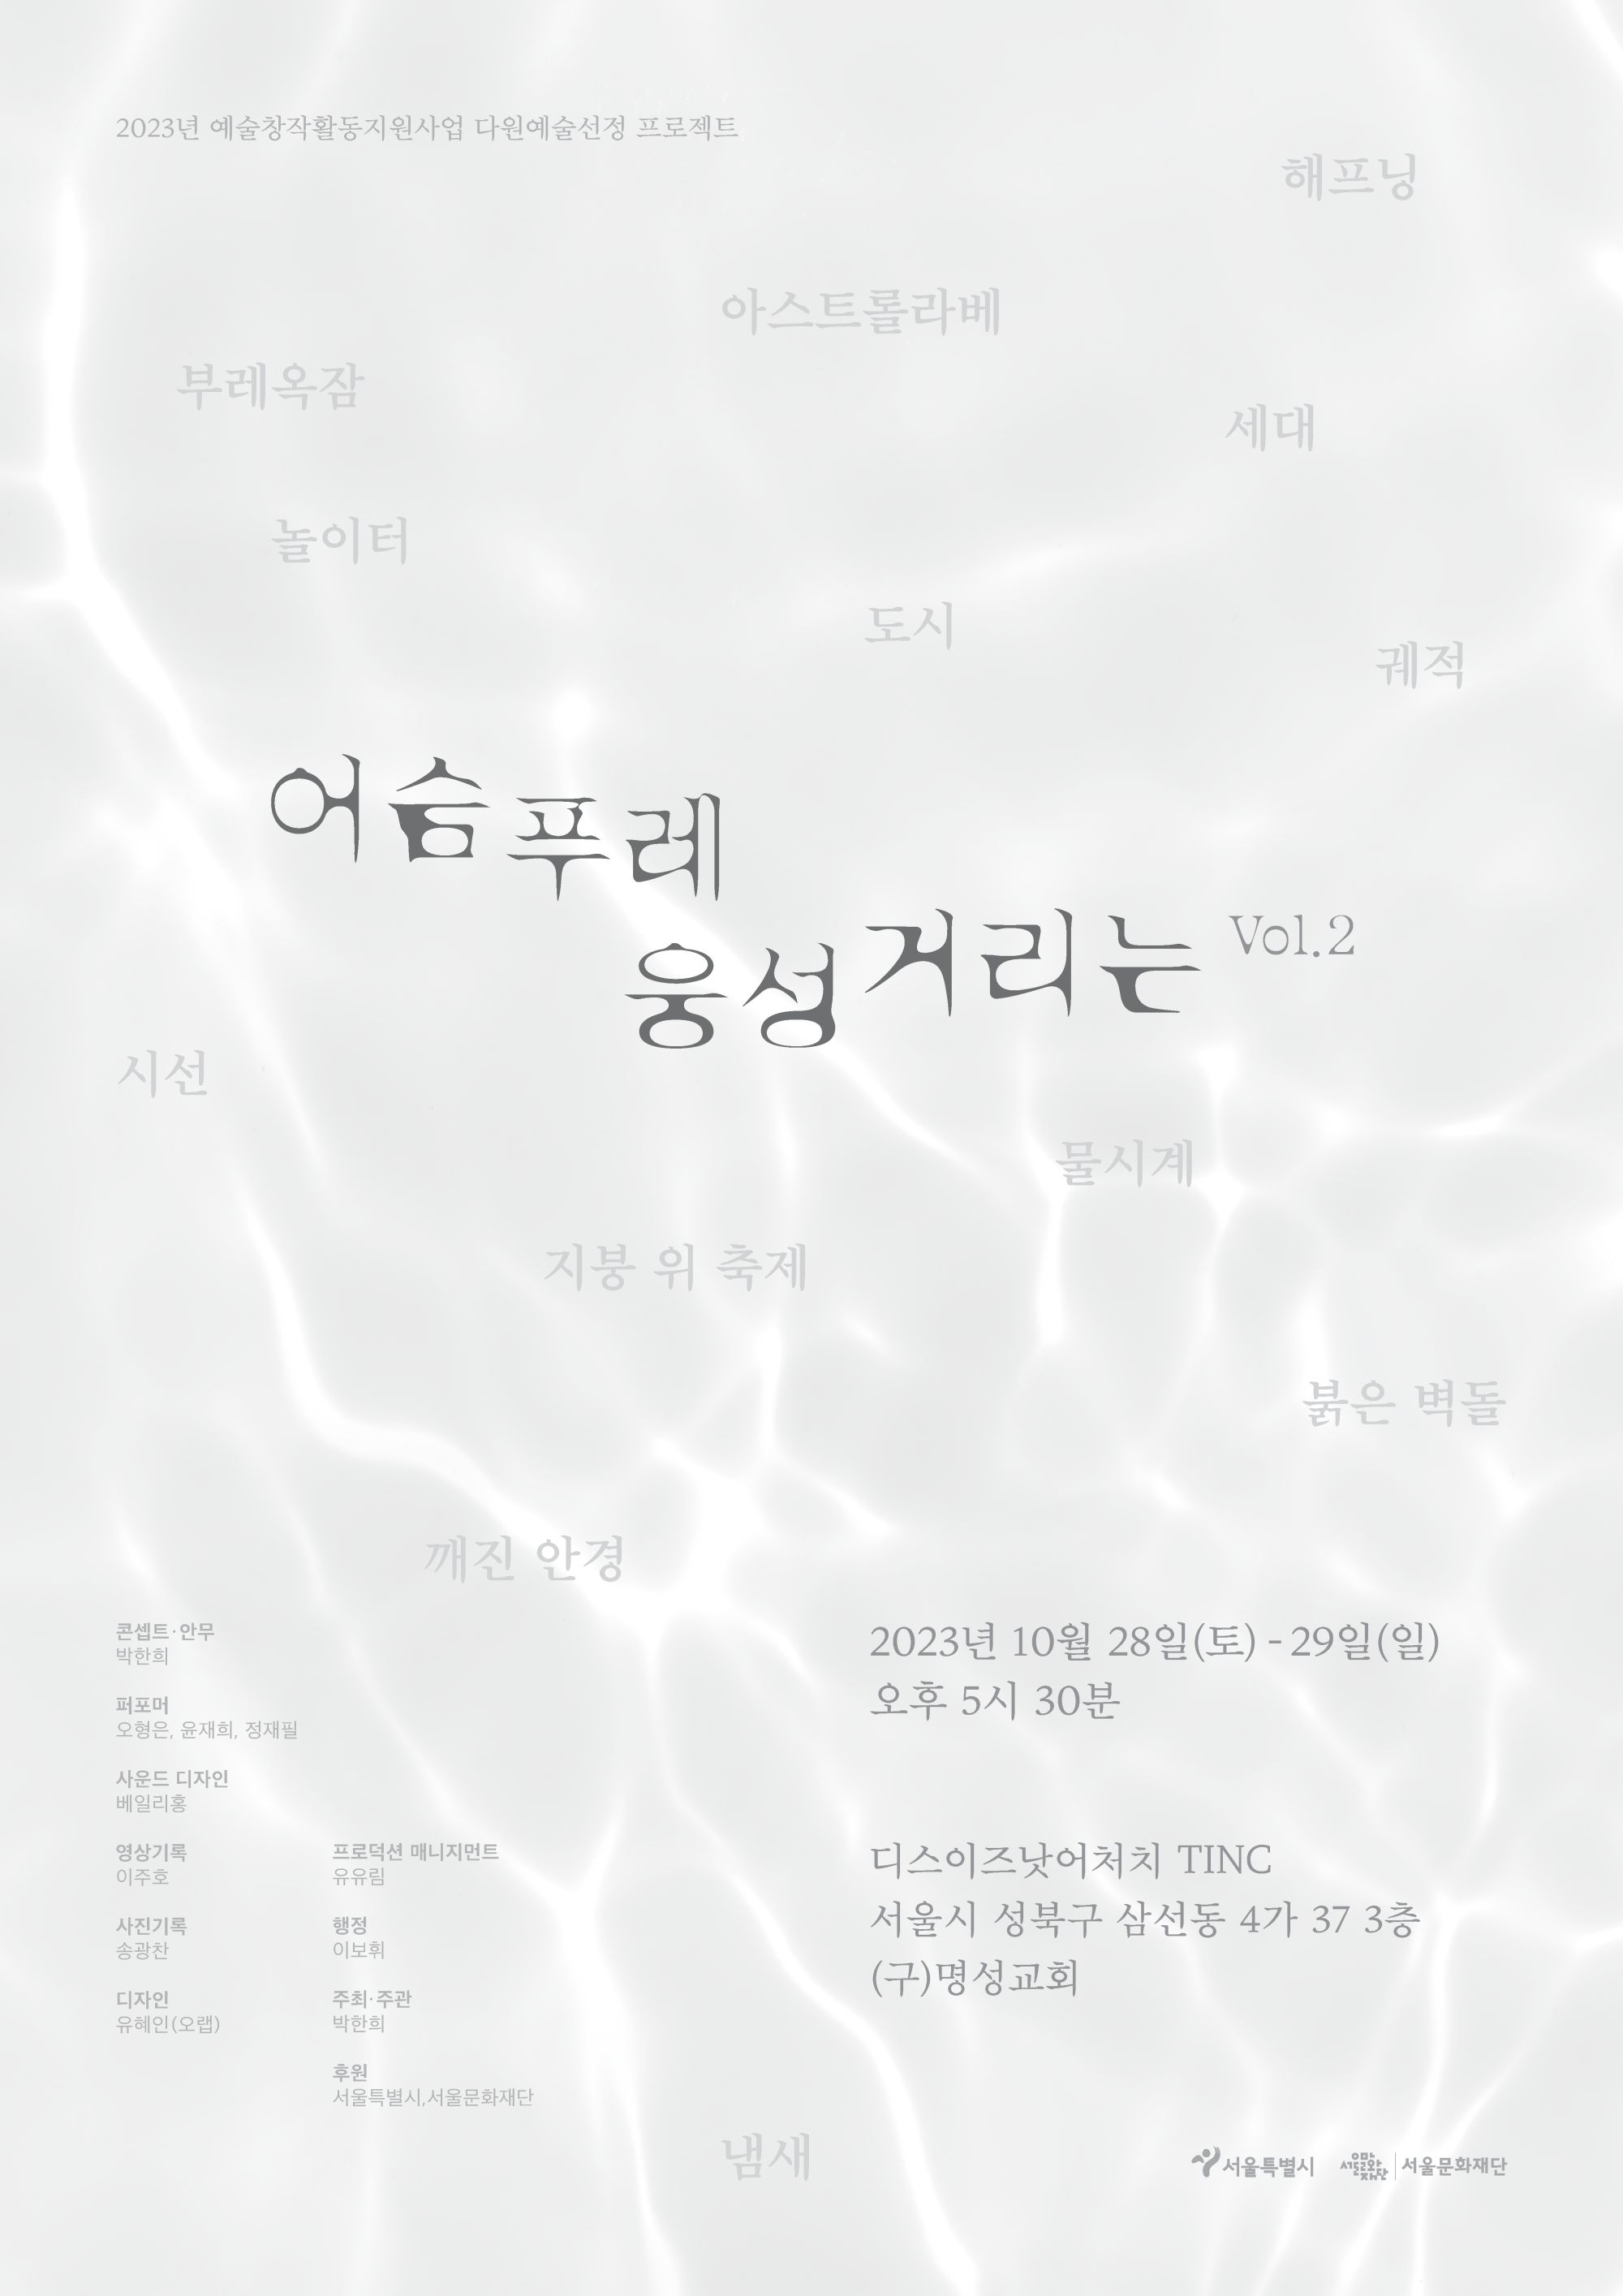 [박한희(13기)공연] 《어슴푸레 웅성거리는 Vol.2》 image